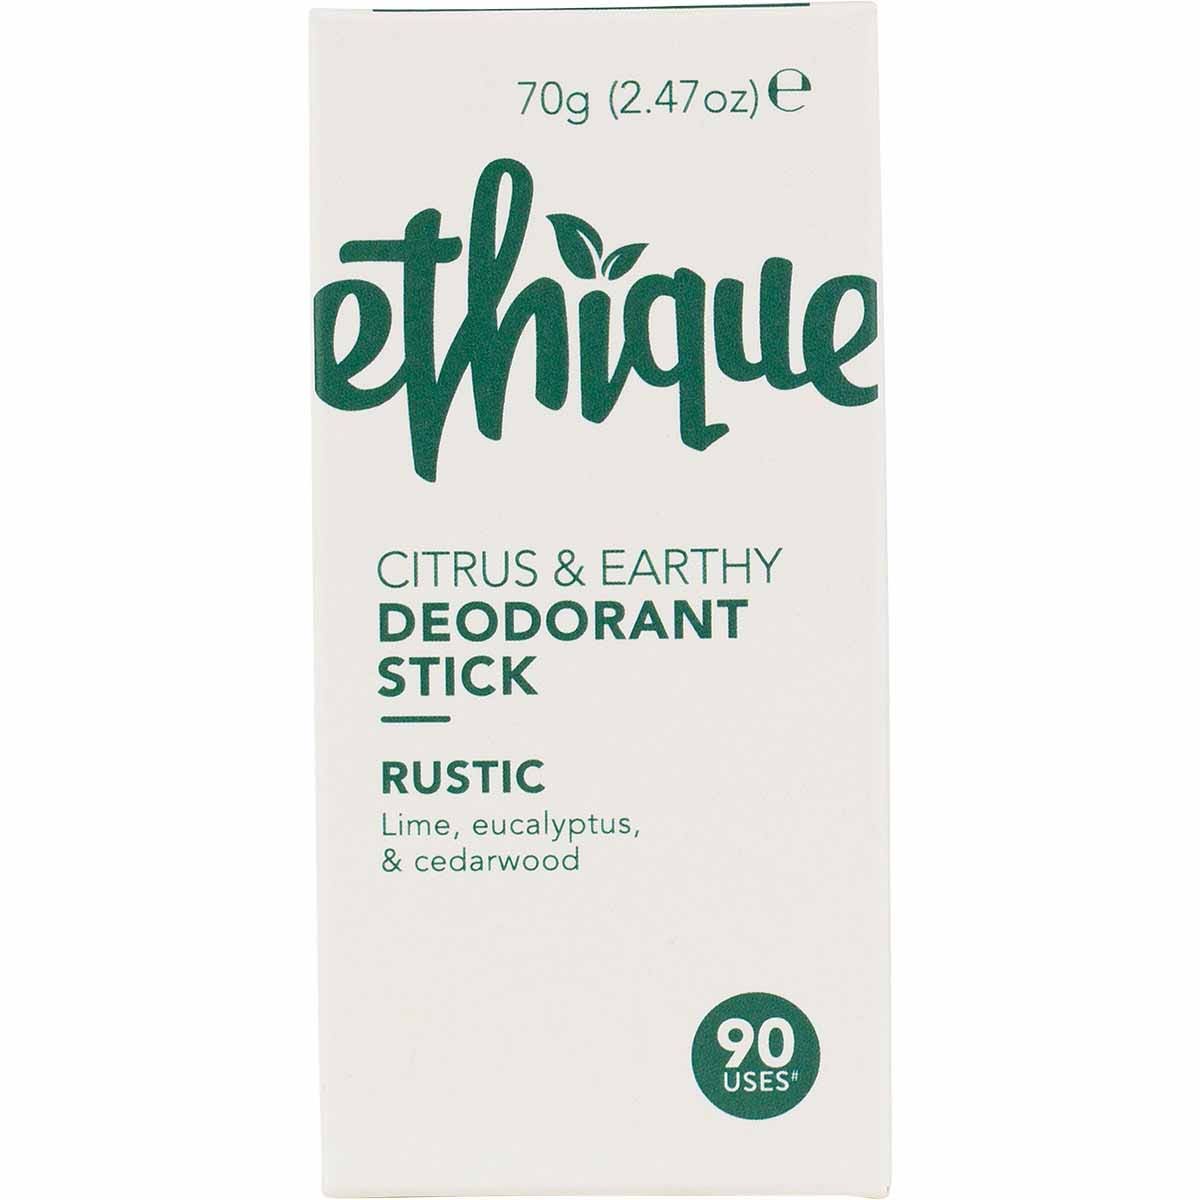 Ethique Botanica Solid Deodorant Stick - Rustic Lime & Eucalyptus Deodorant Stick (70g)